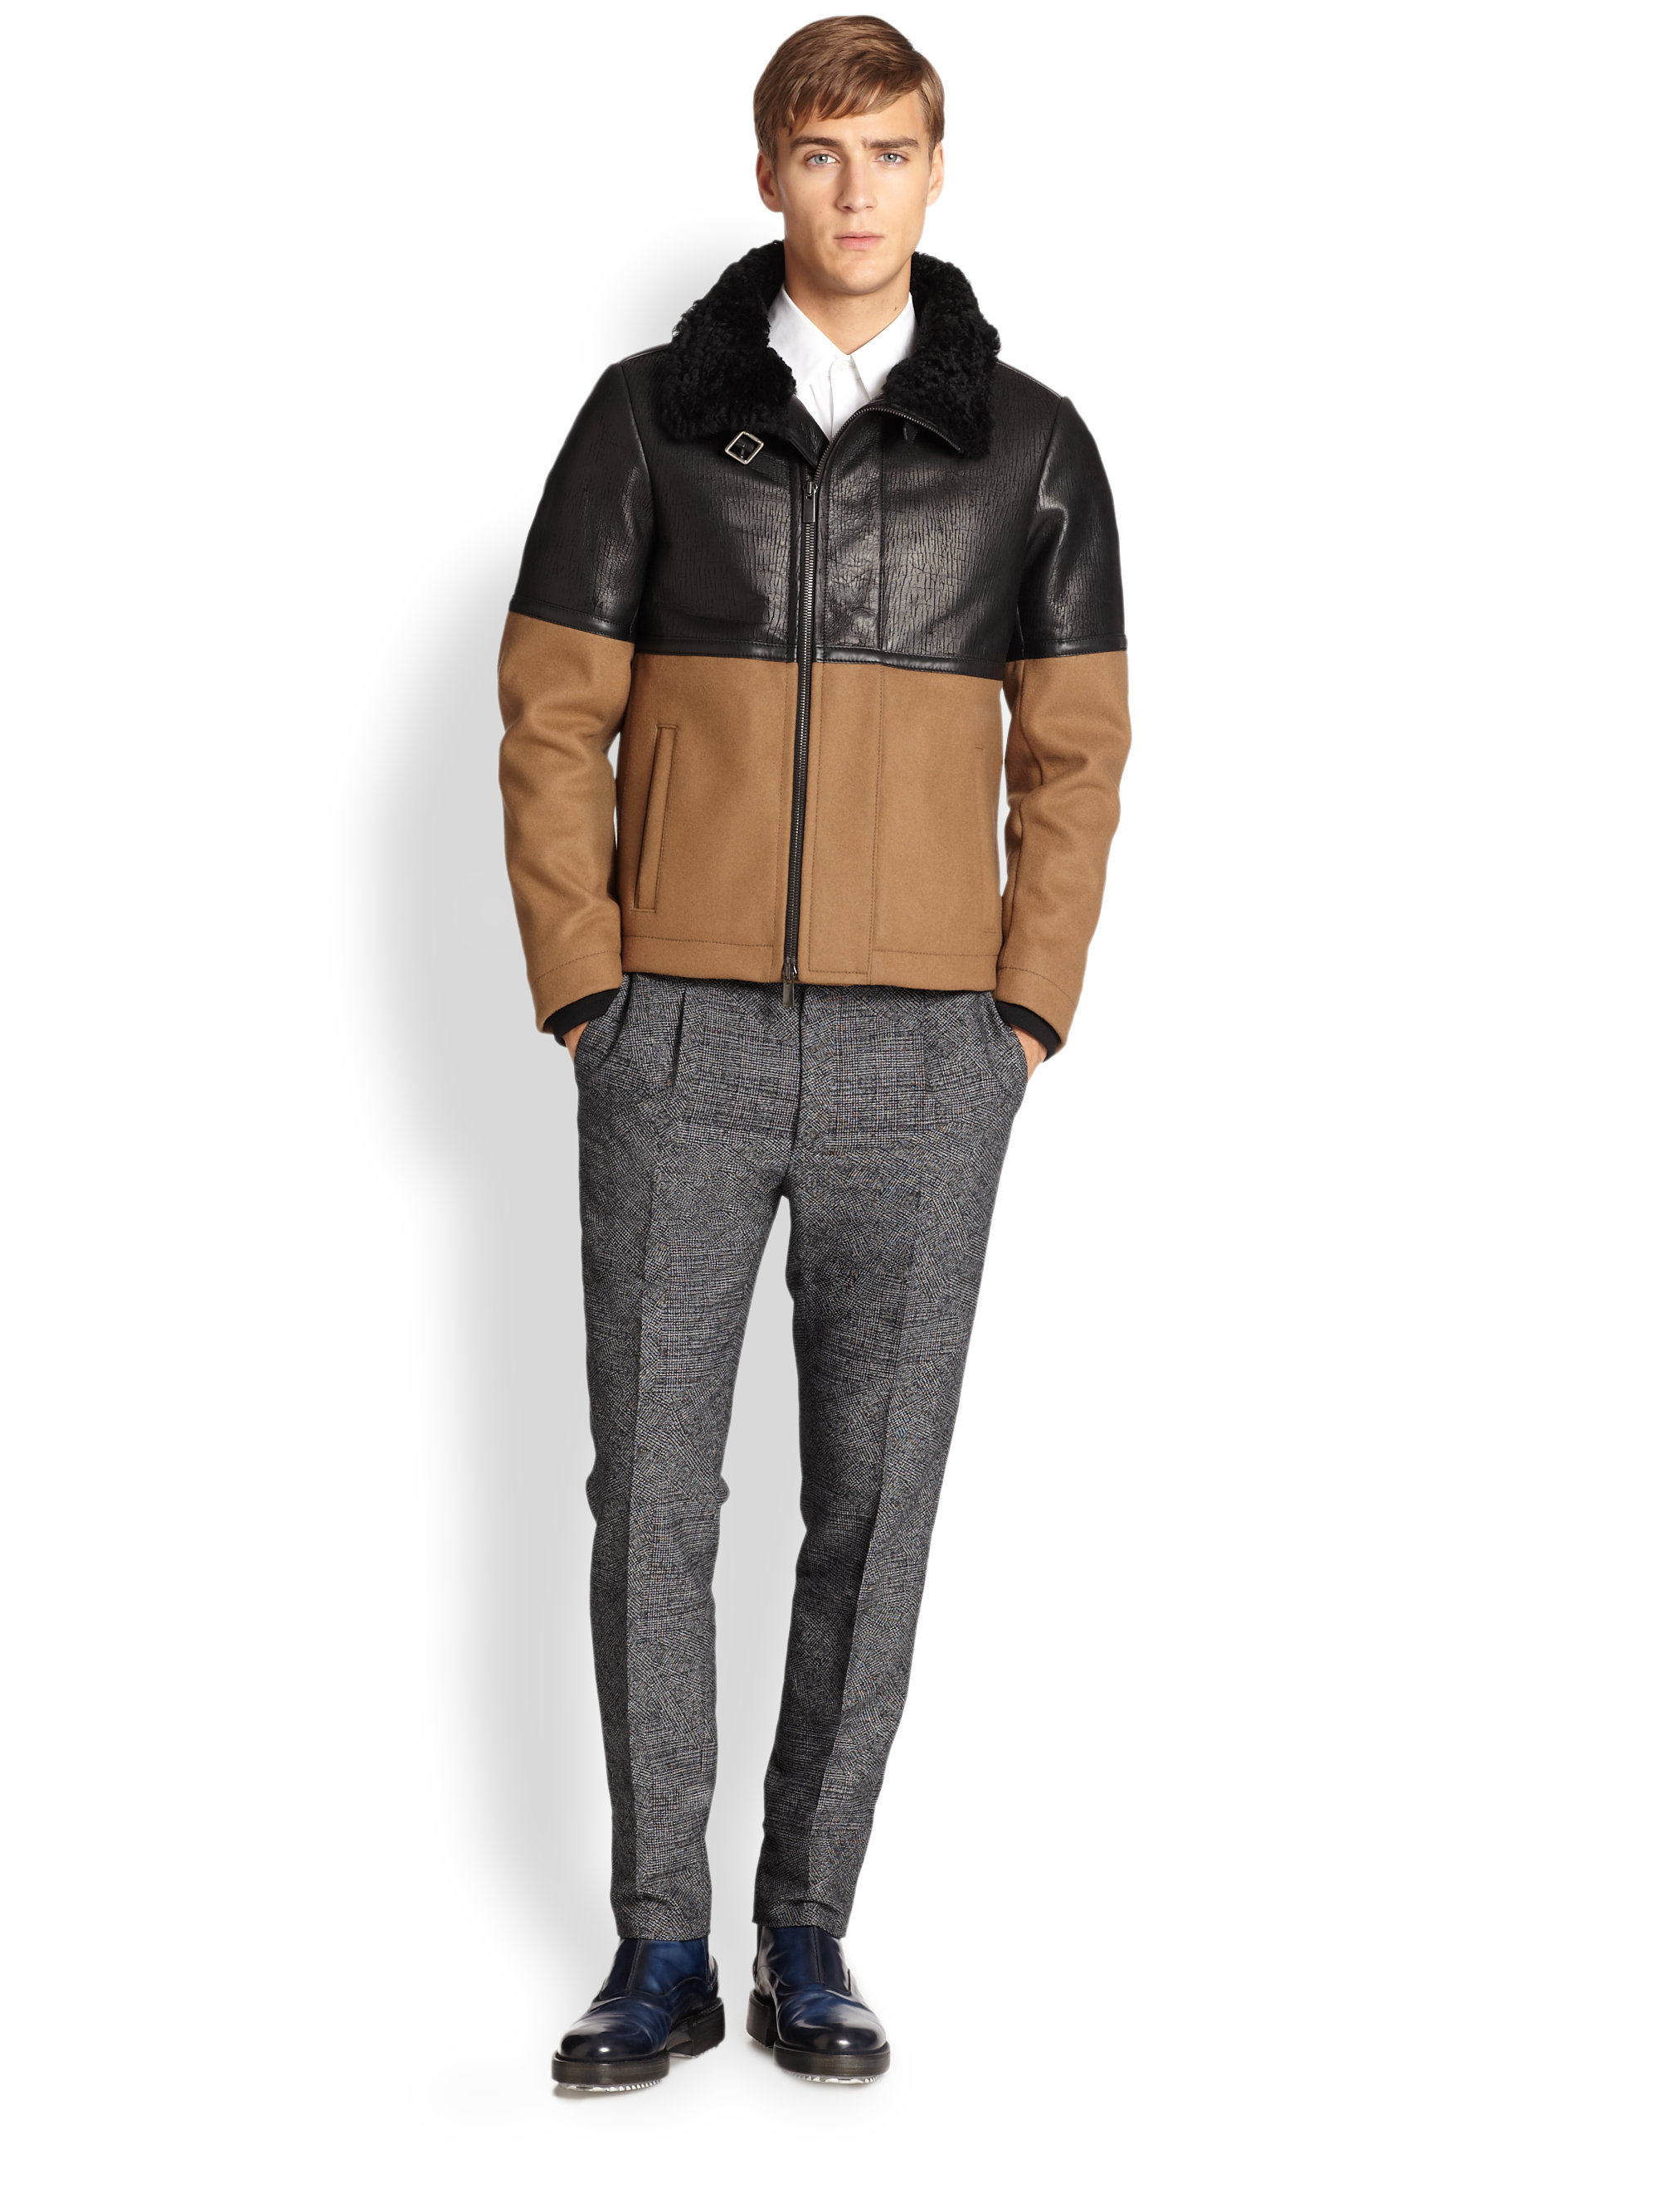 Lyst - Fendi Leather, Wool & Shearling Jacket in Black for Men